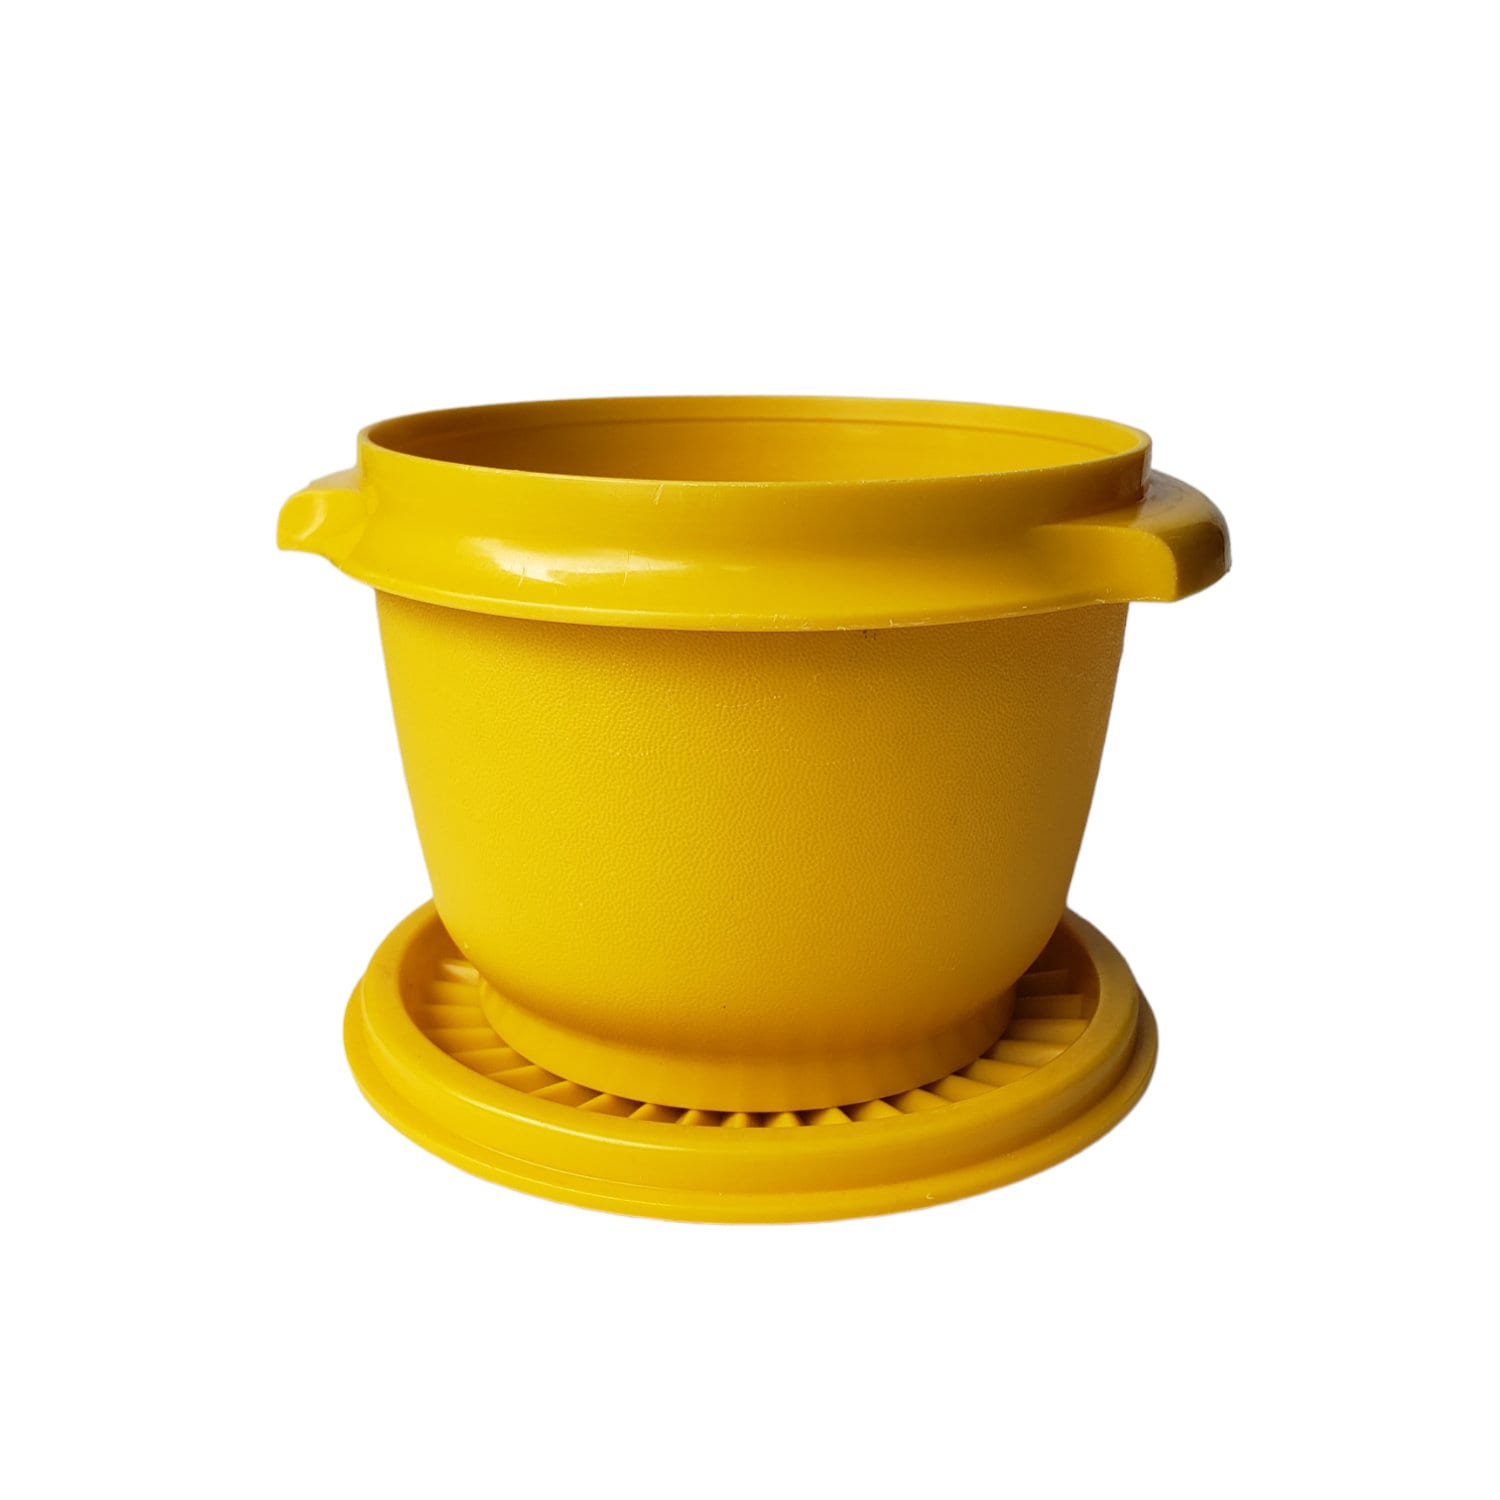 Tupperware Servalier 1323, 886 Small Round Bowls W Handles, Orange